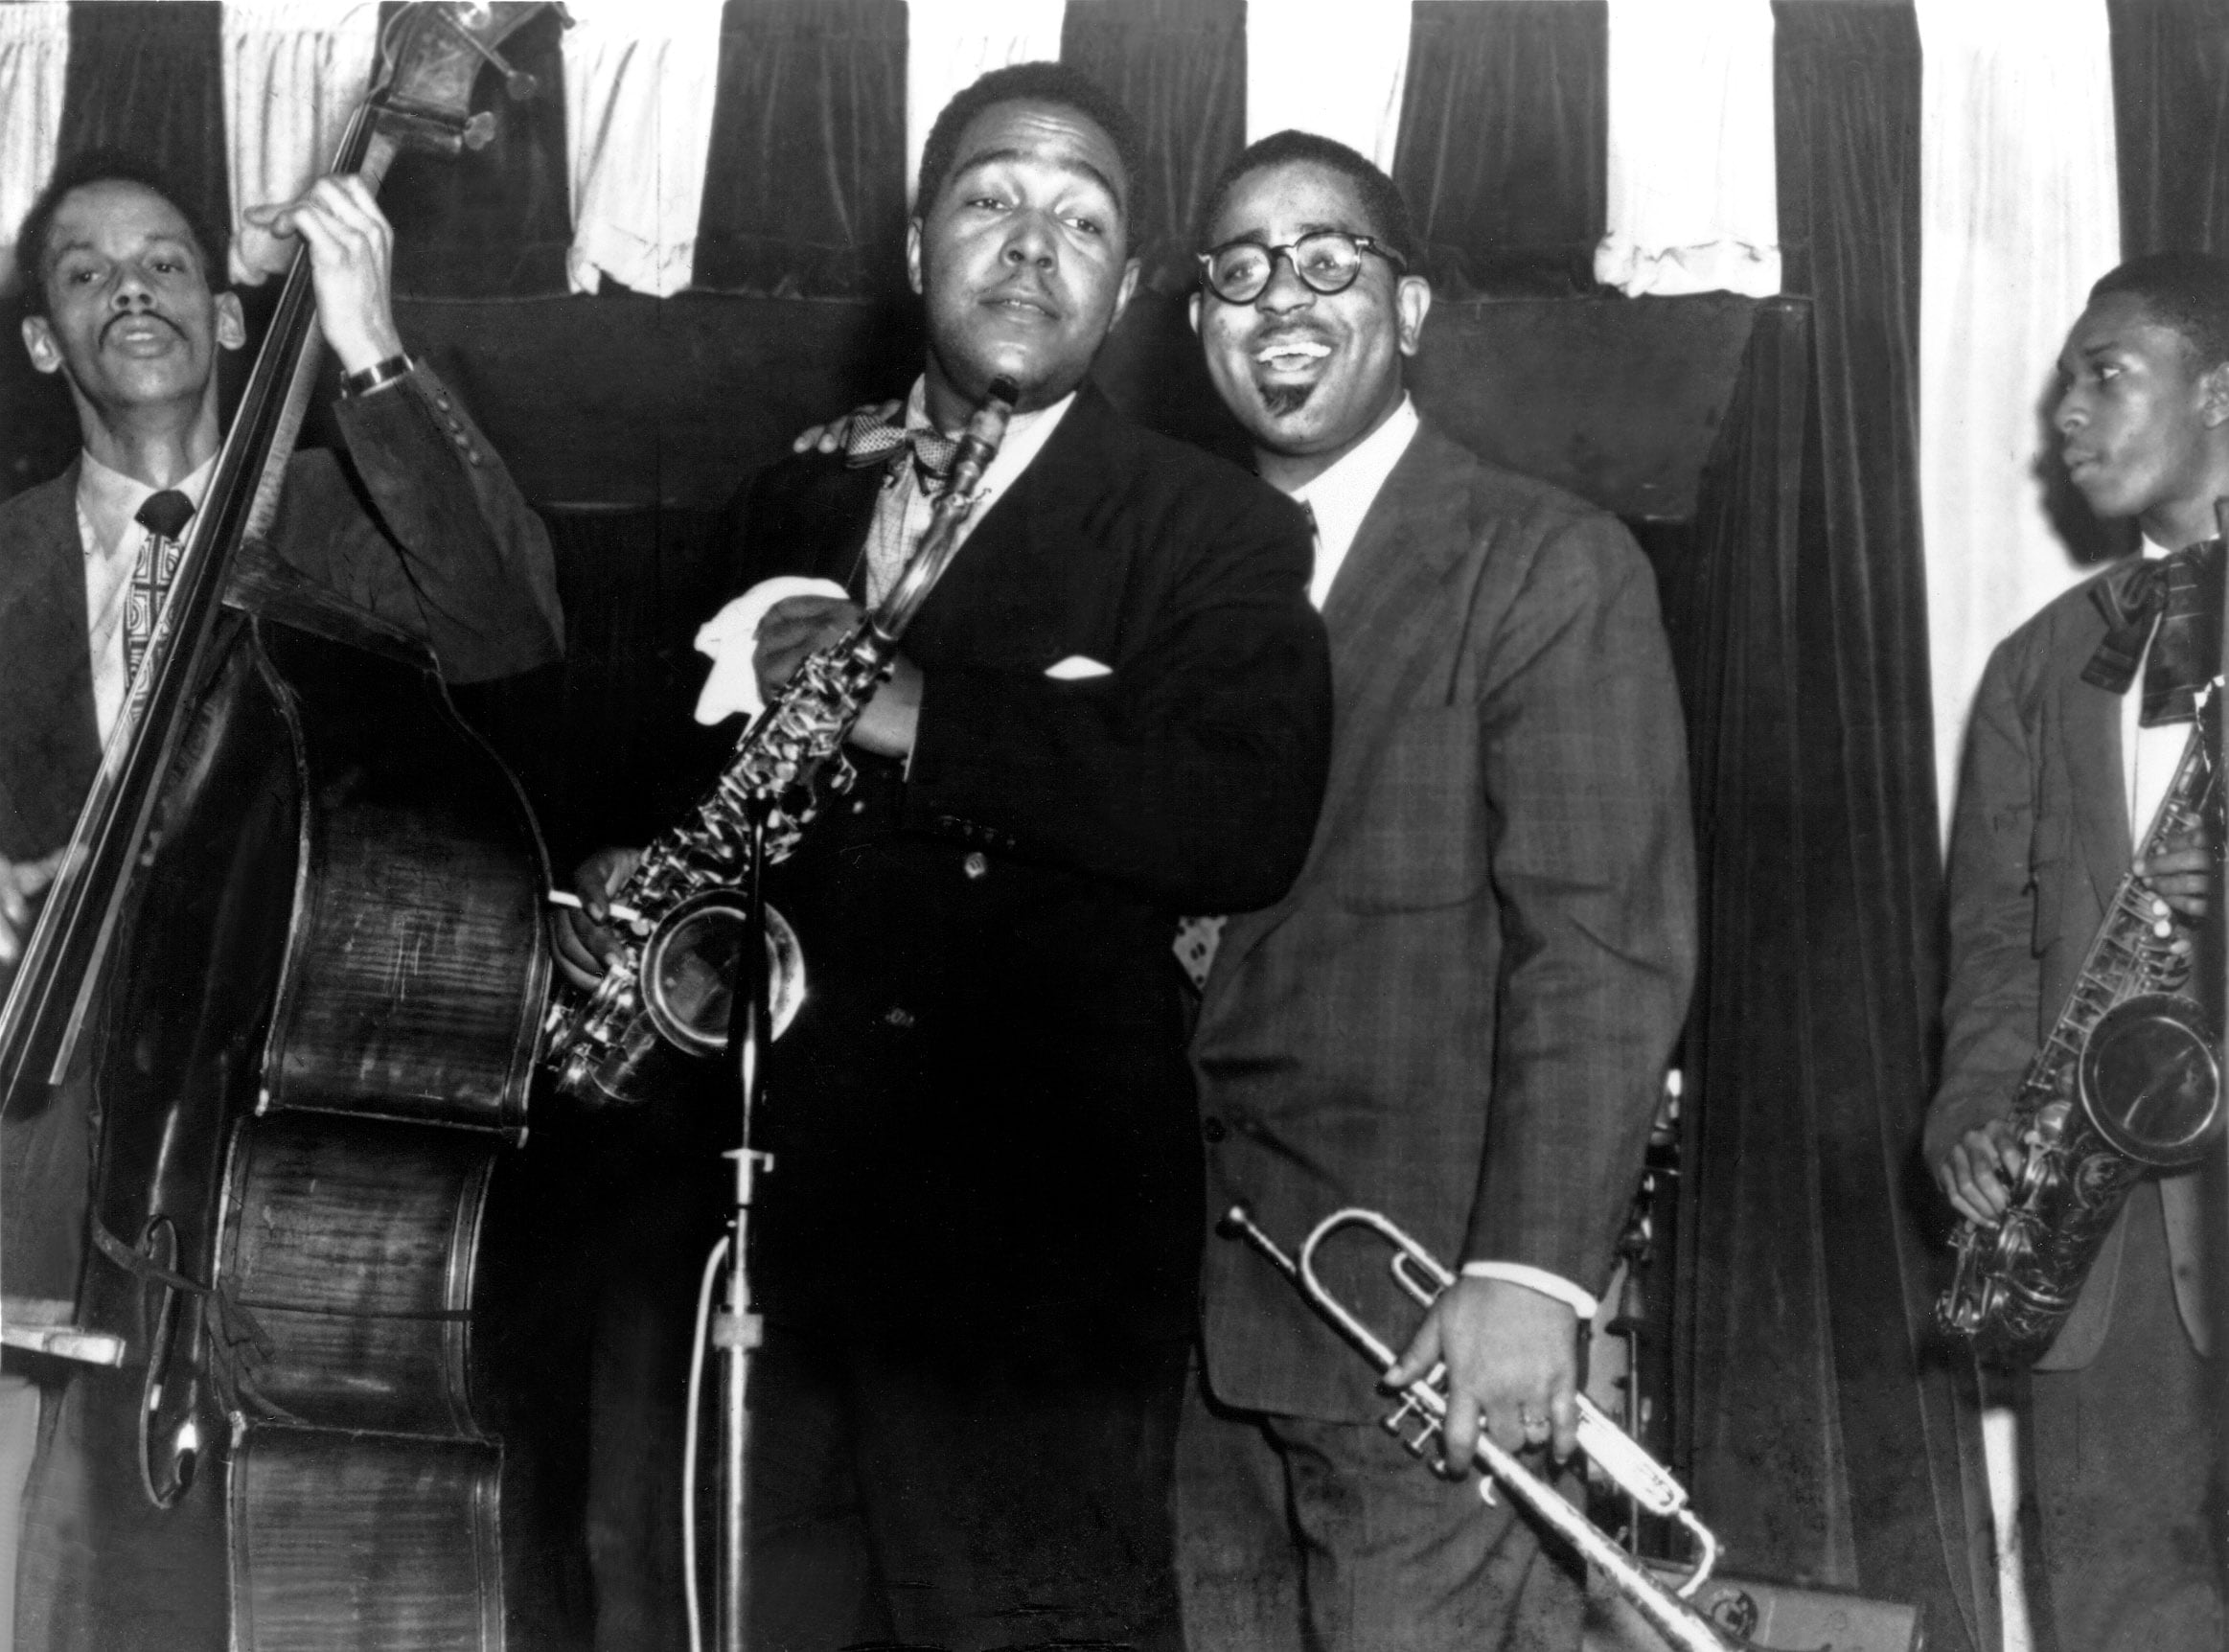 Senza data: al centro, Charlie Parker e Dizzy Gillespie dal vivo sul palco.